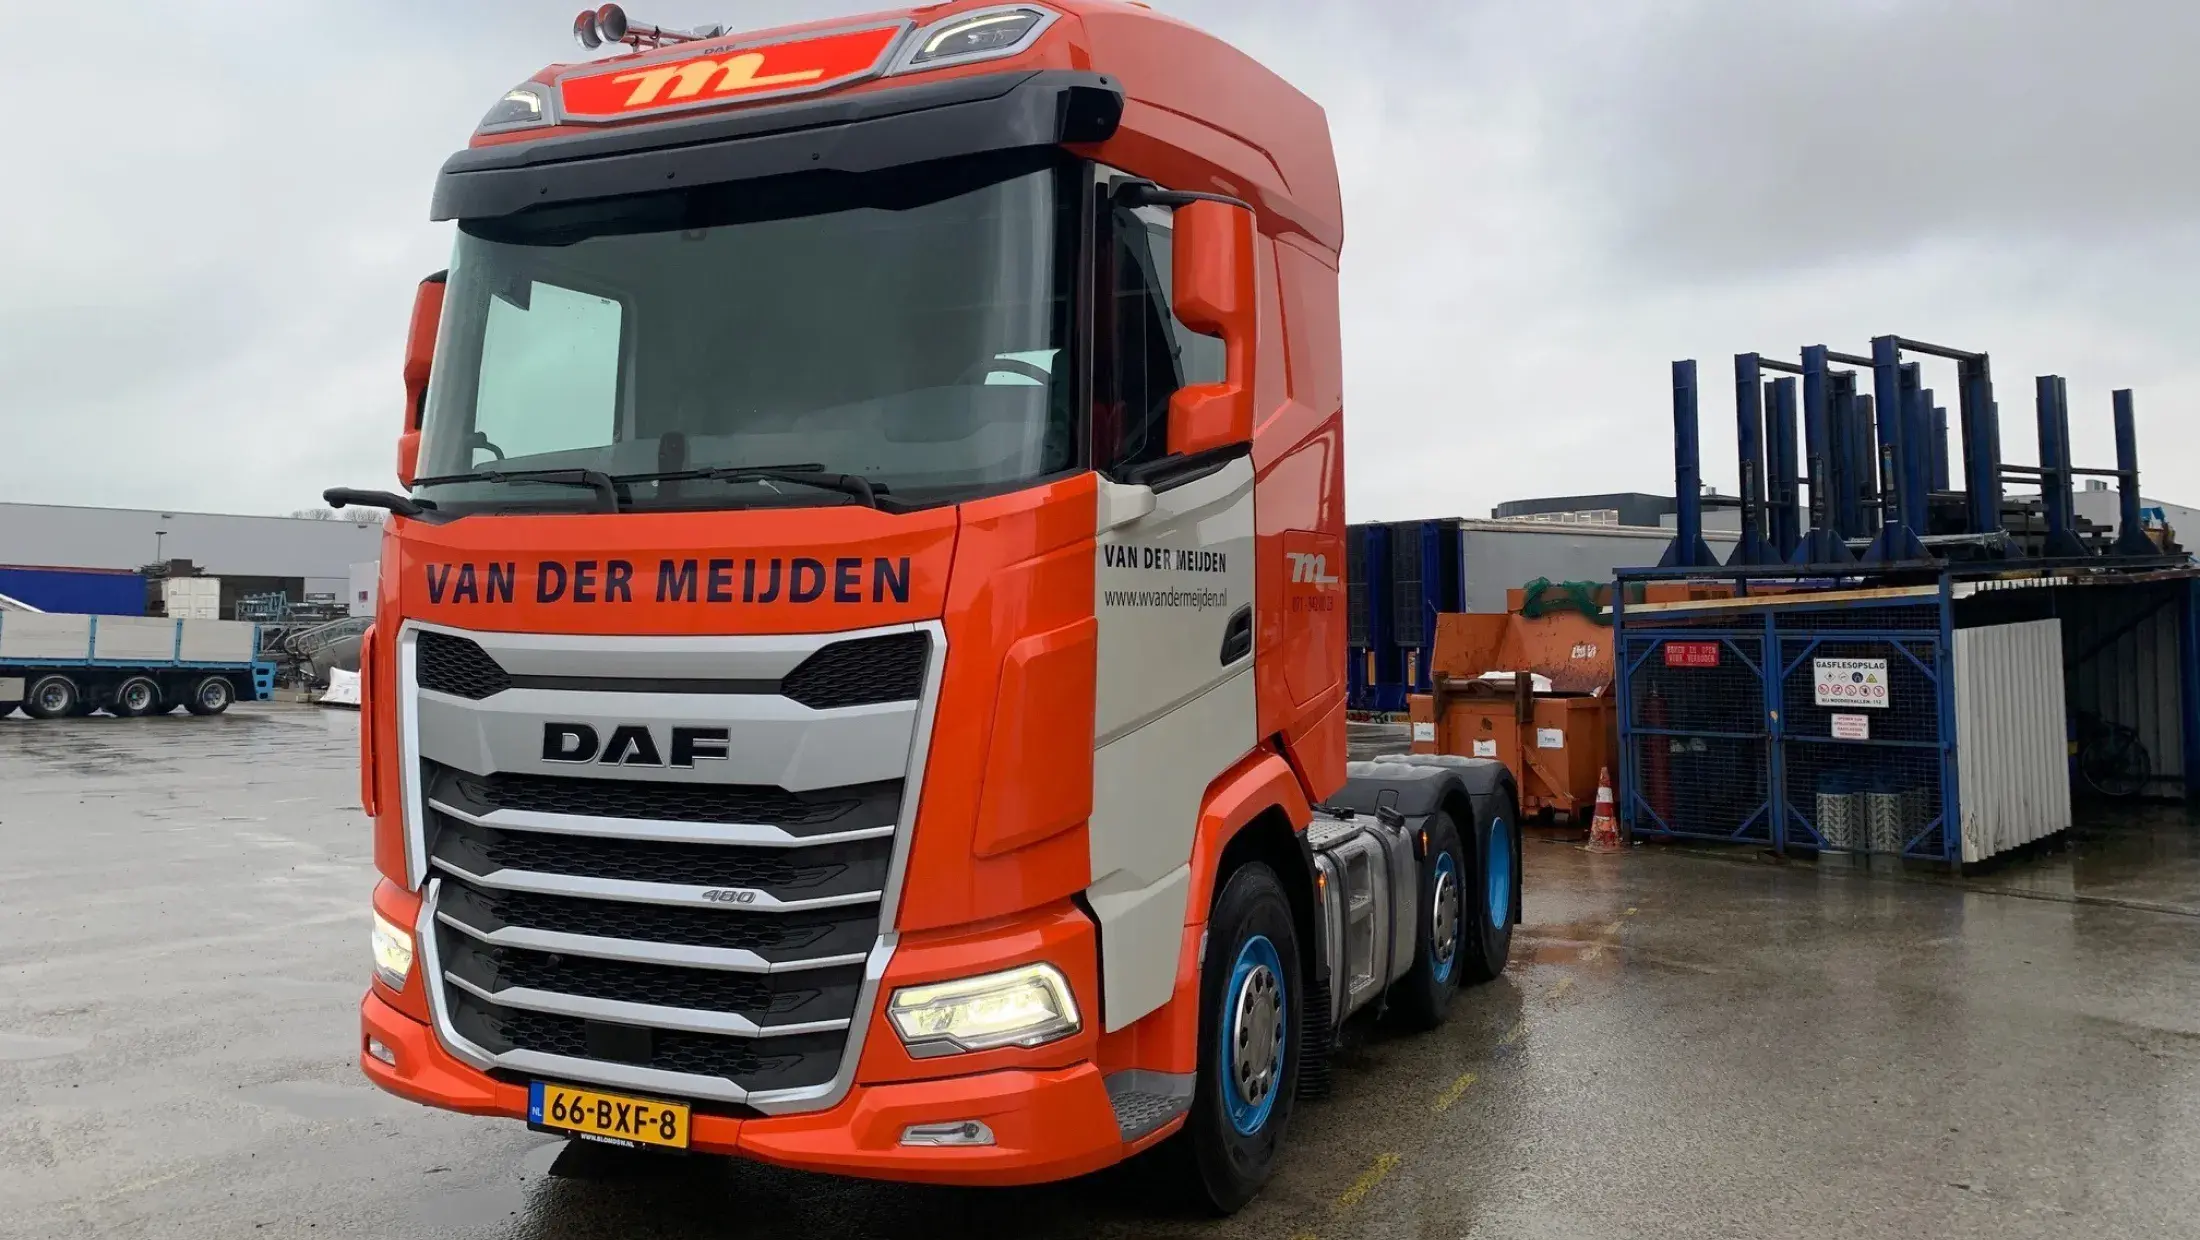 DAF XG 480 FTG NGD - 72-t - Van der Meijden